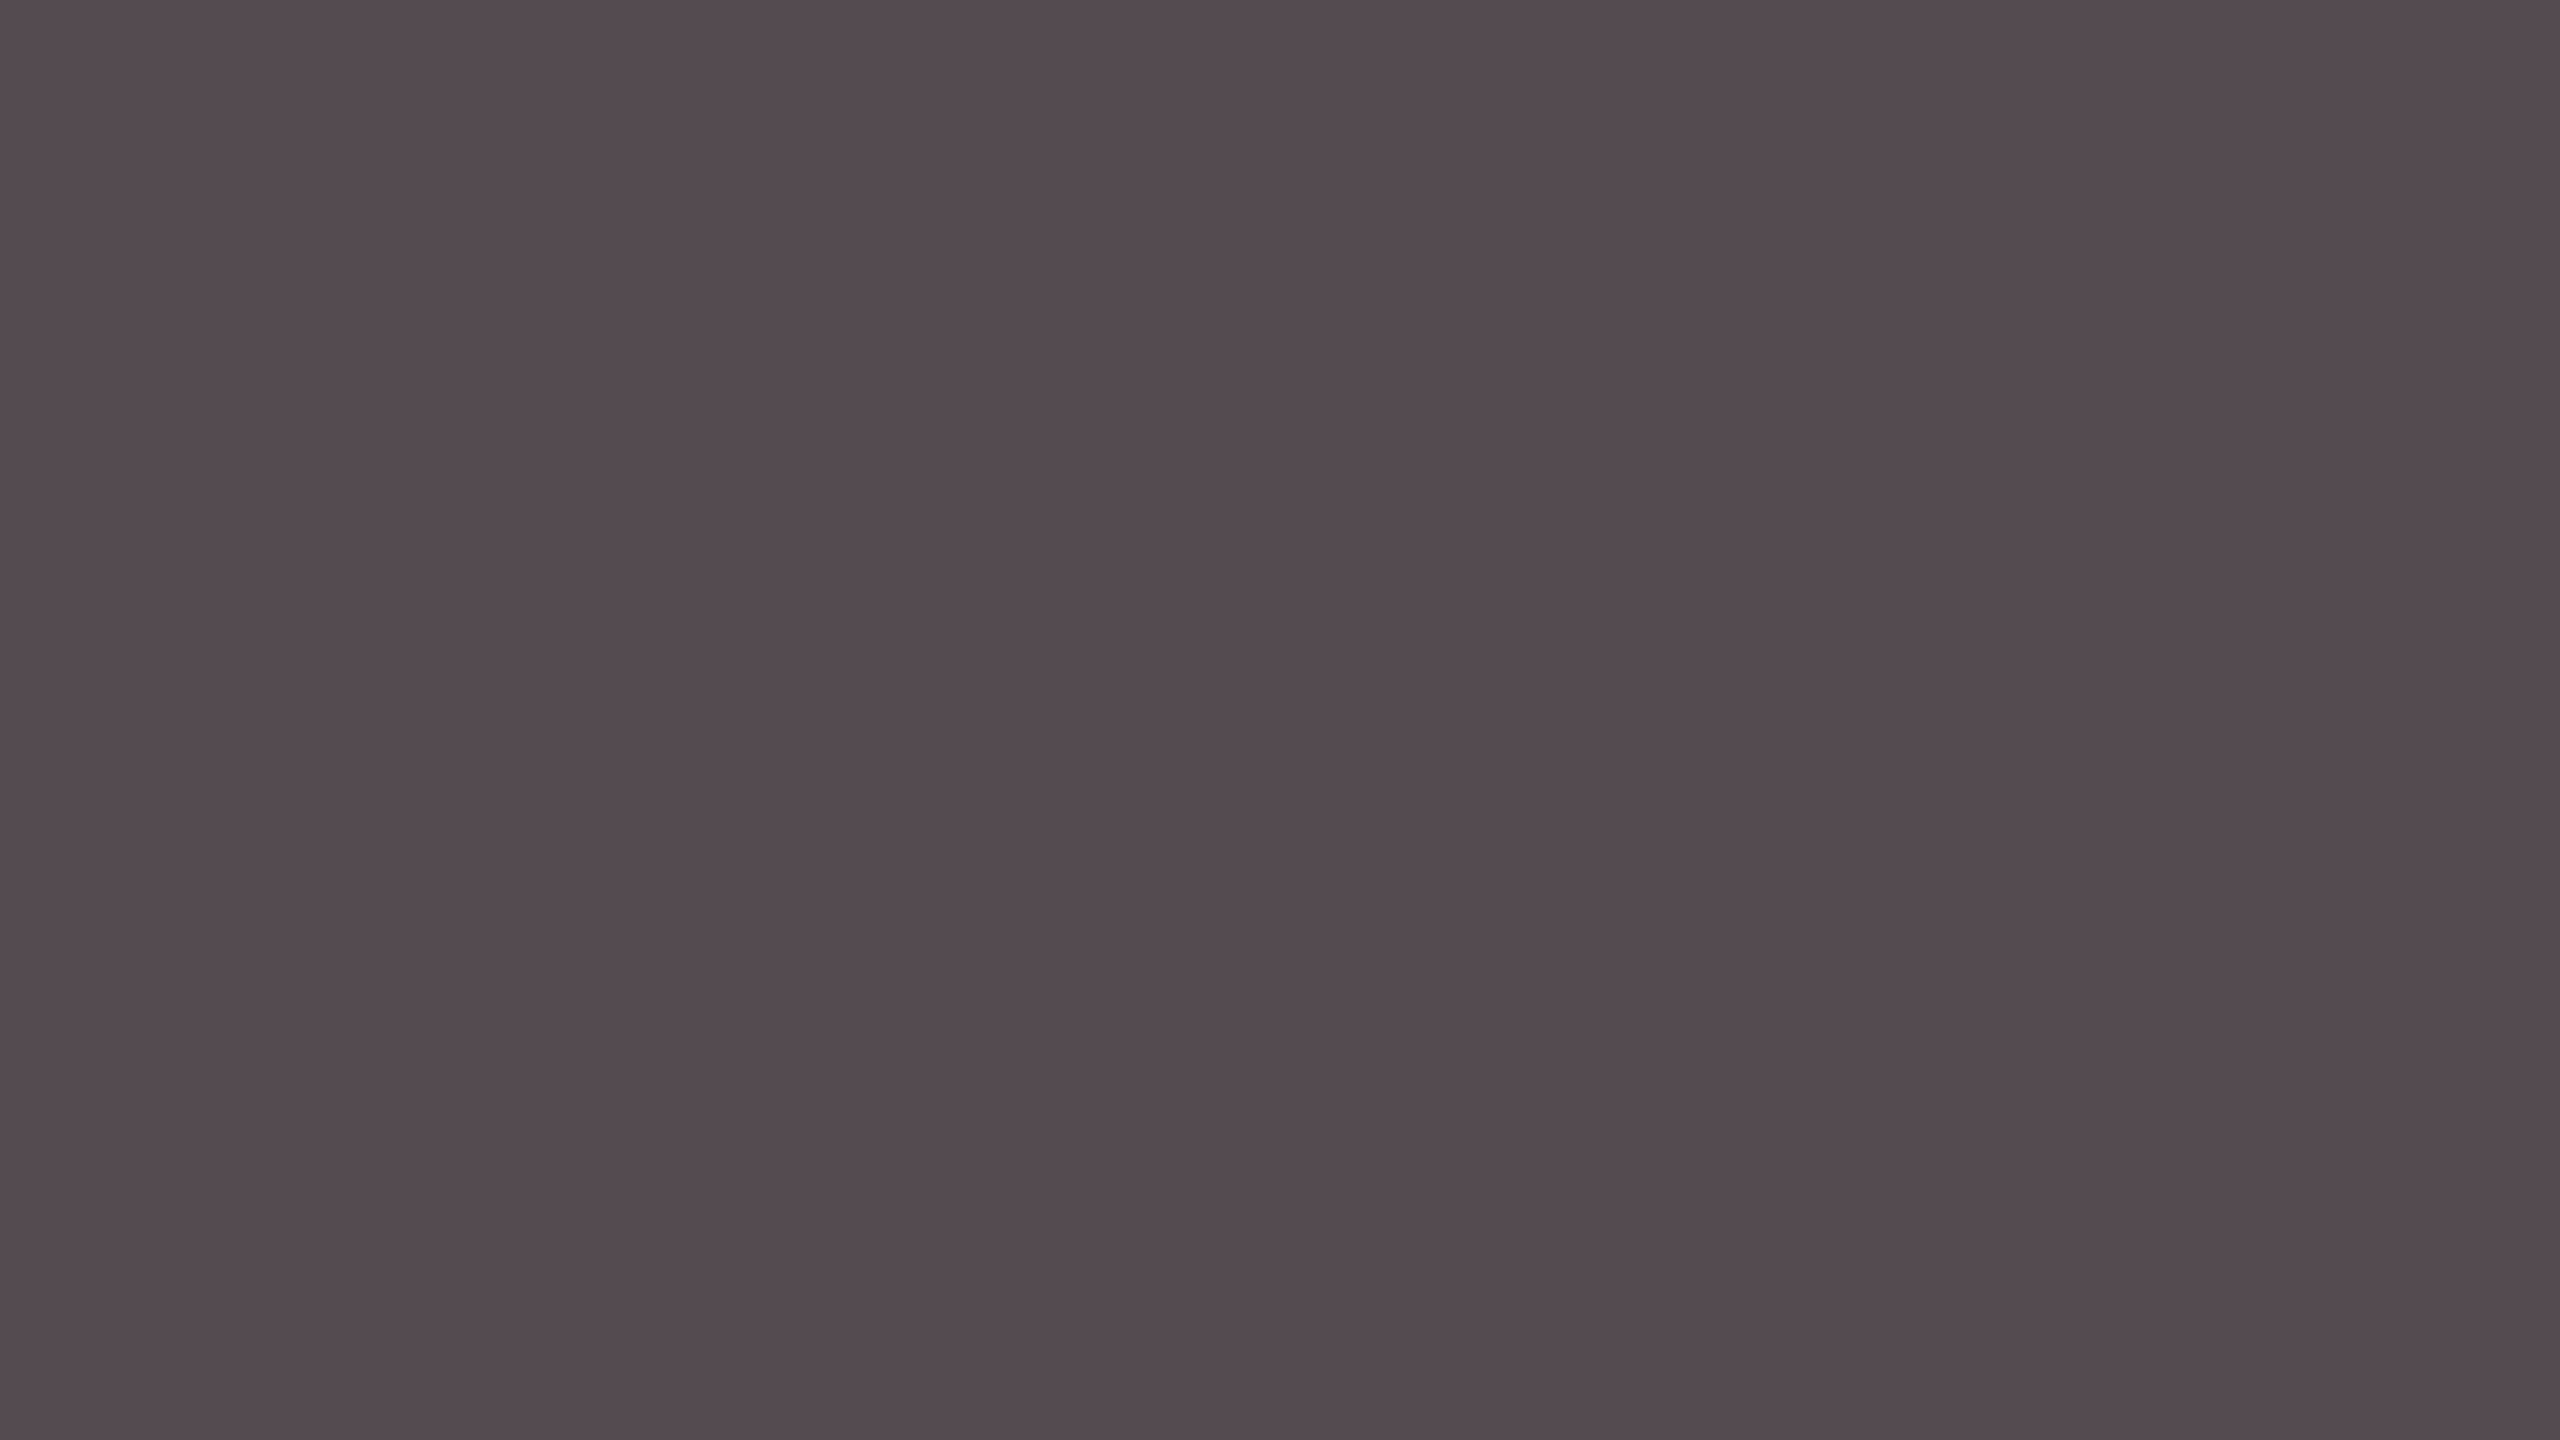 2560x1440 Dark Liver Solid Color Background